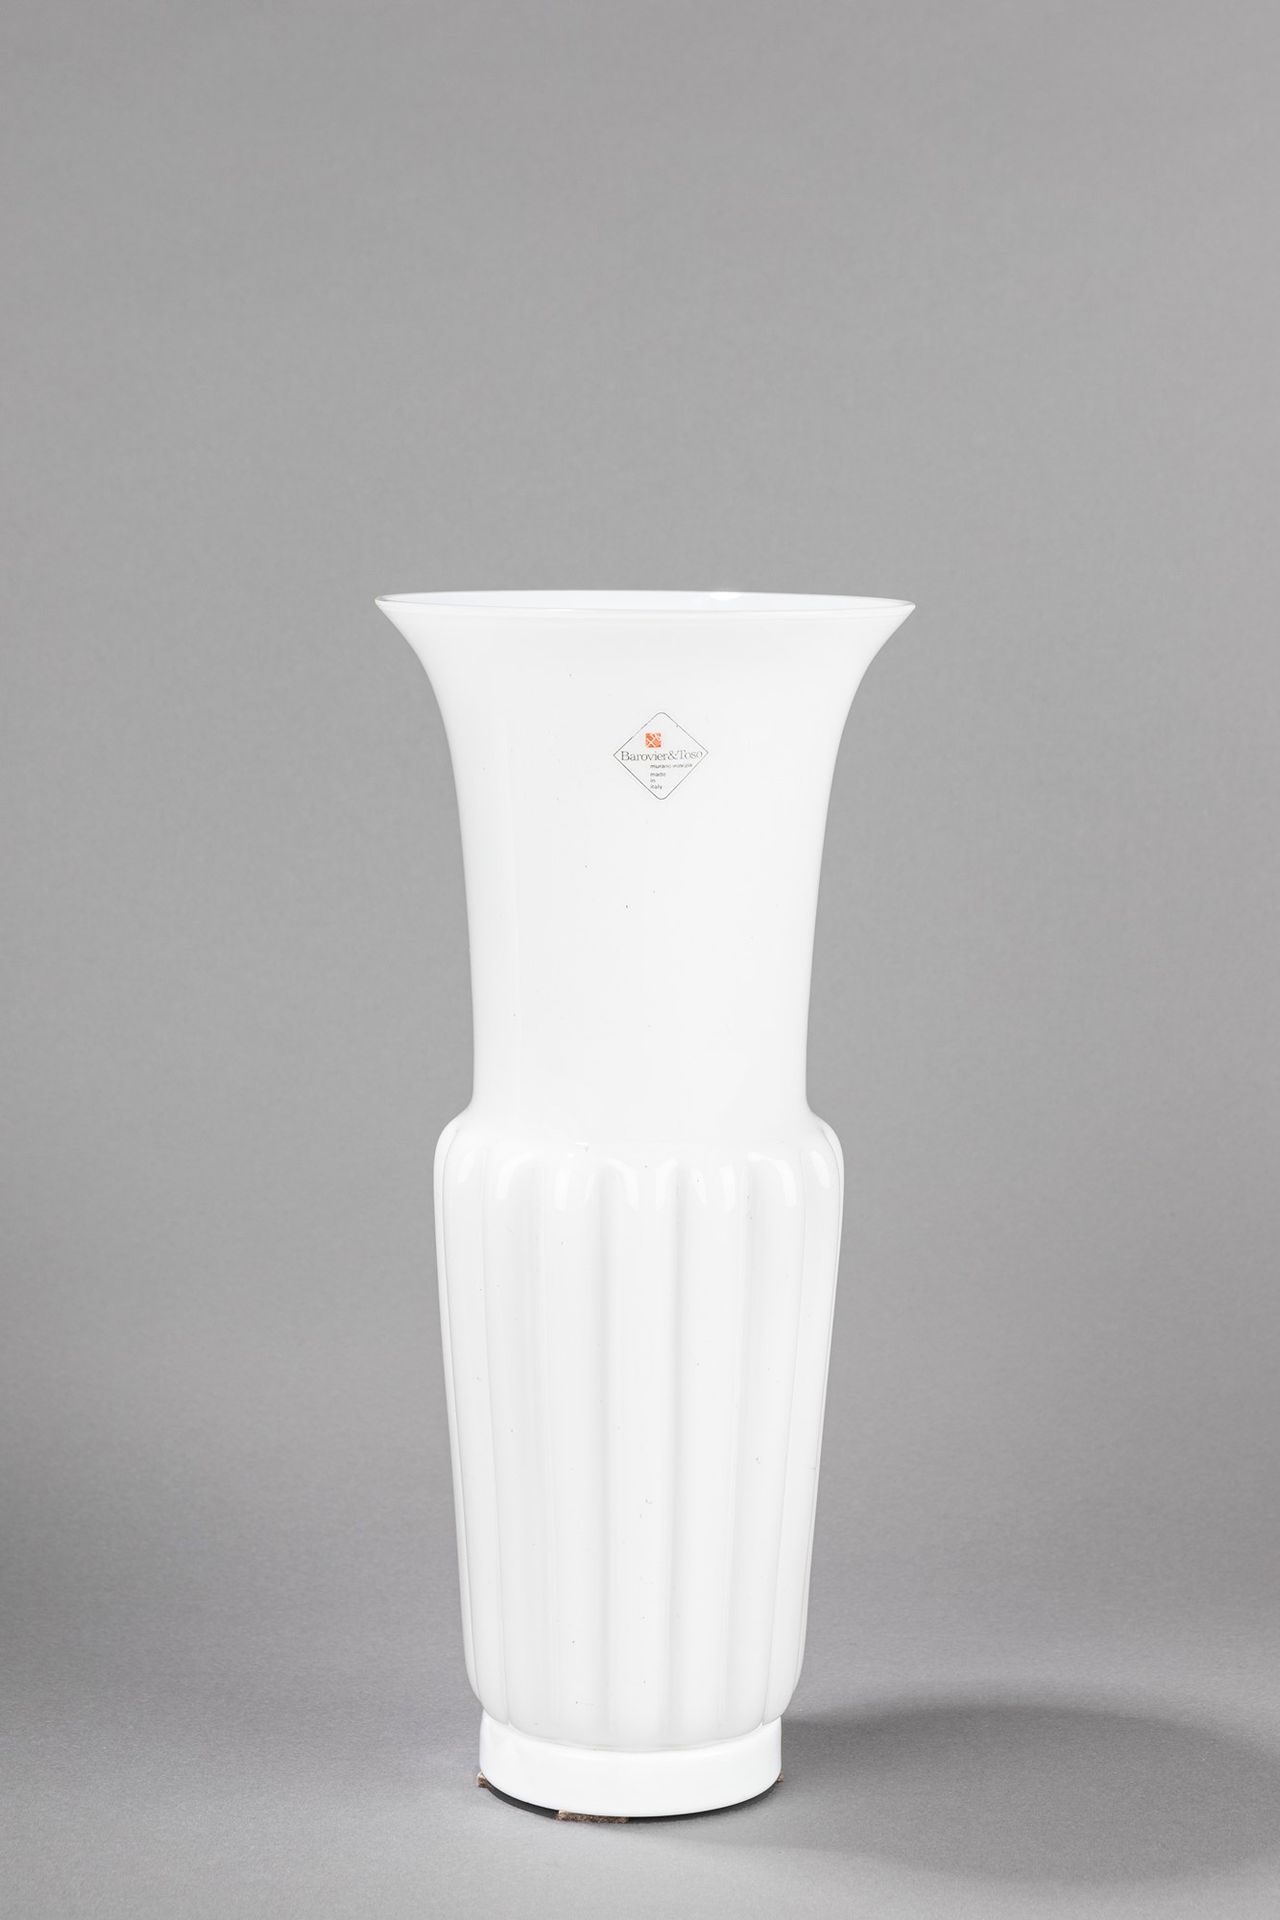 Barovier e Toso 花瓶，1980年左右

h 37 x 16 cm
乳白色玻璃，莫兰迪风格。

原始标志和标签。